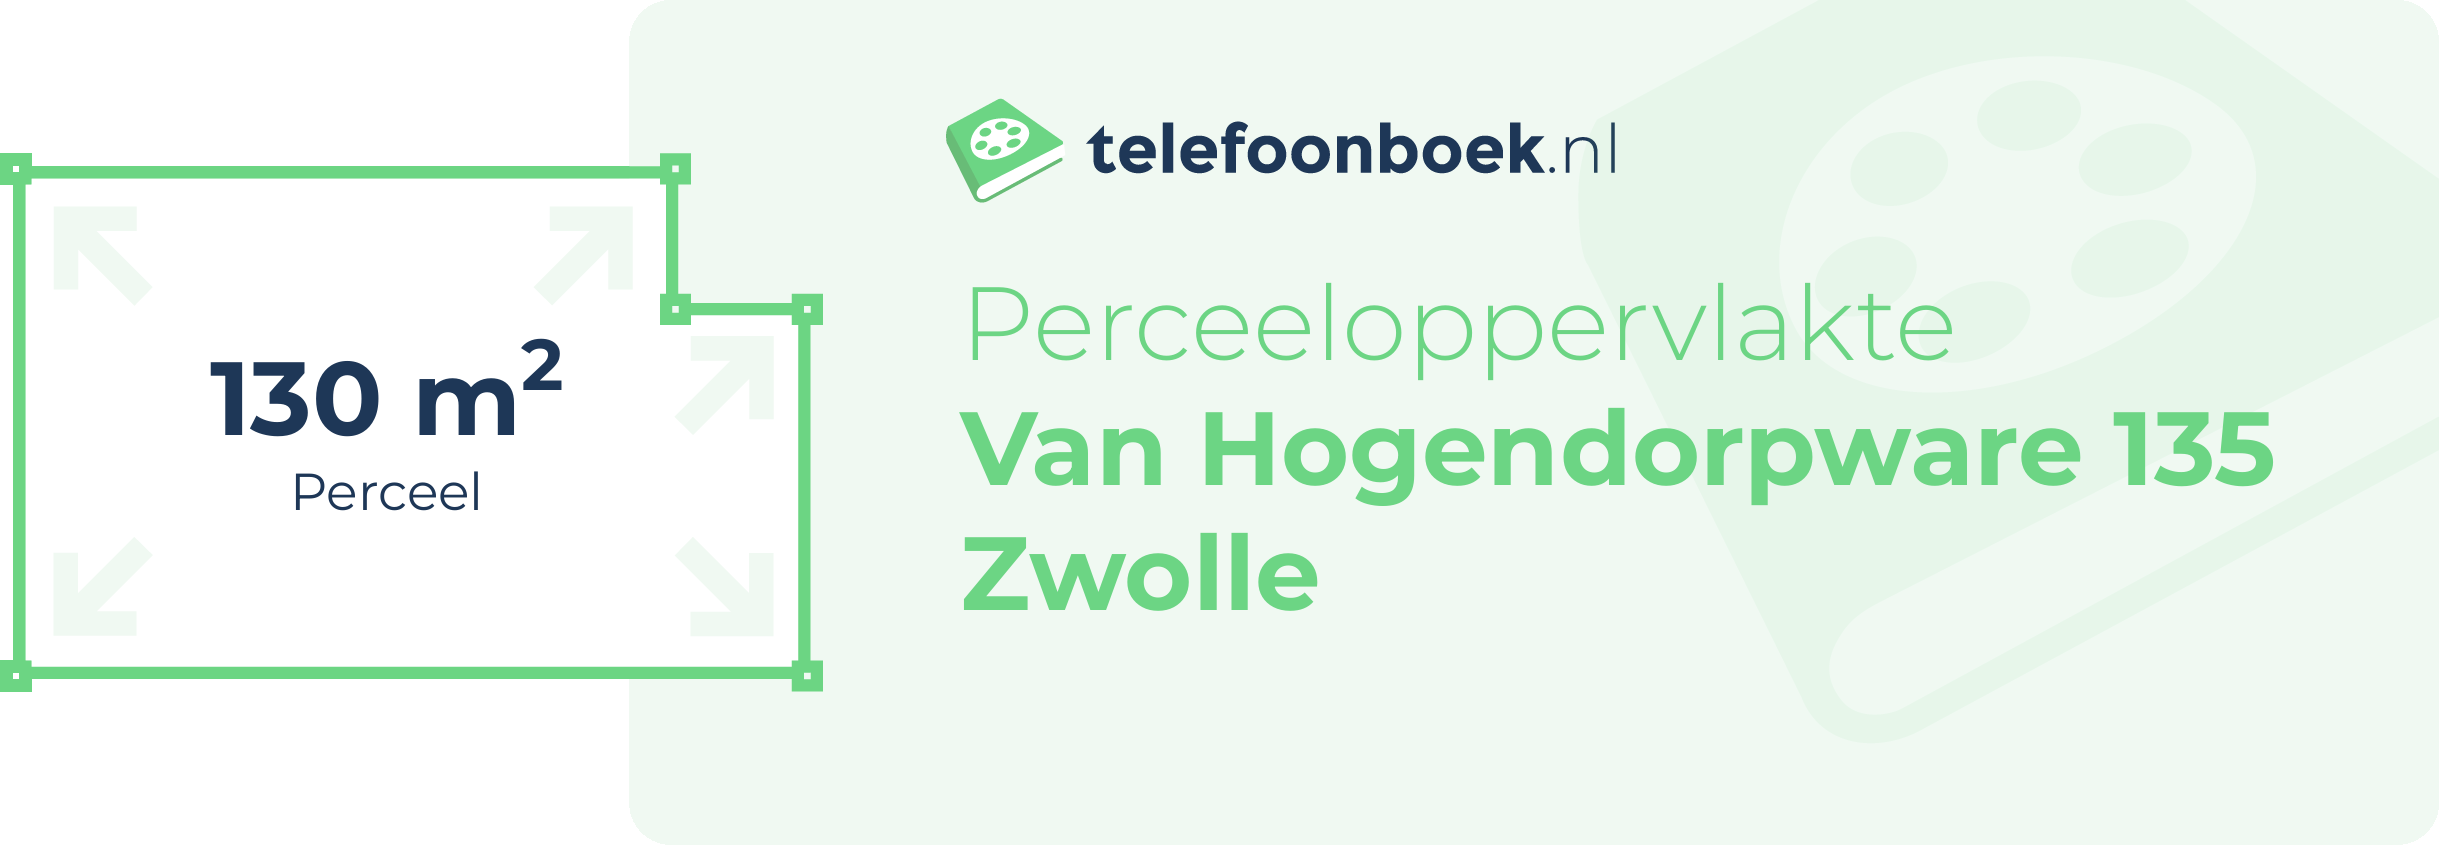 Perceeloppervlakte Van Hogendorpware 135 Zwolle